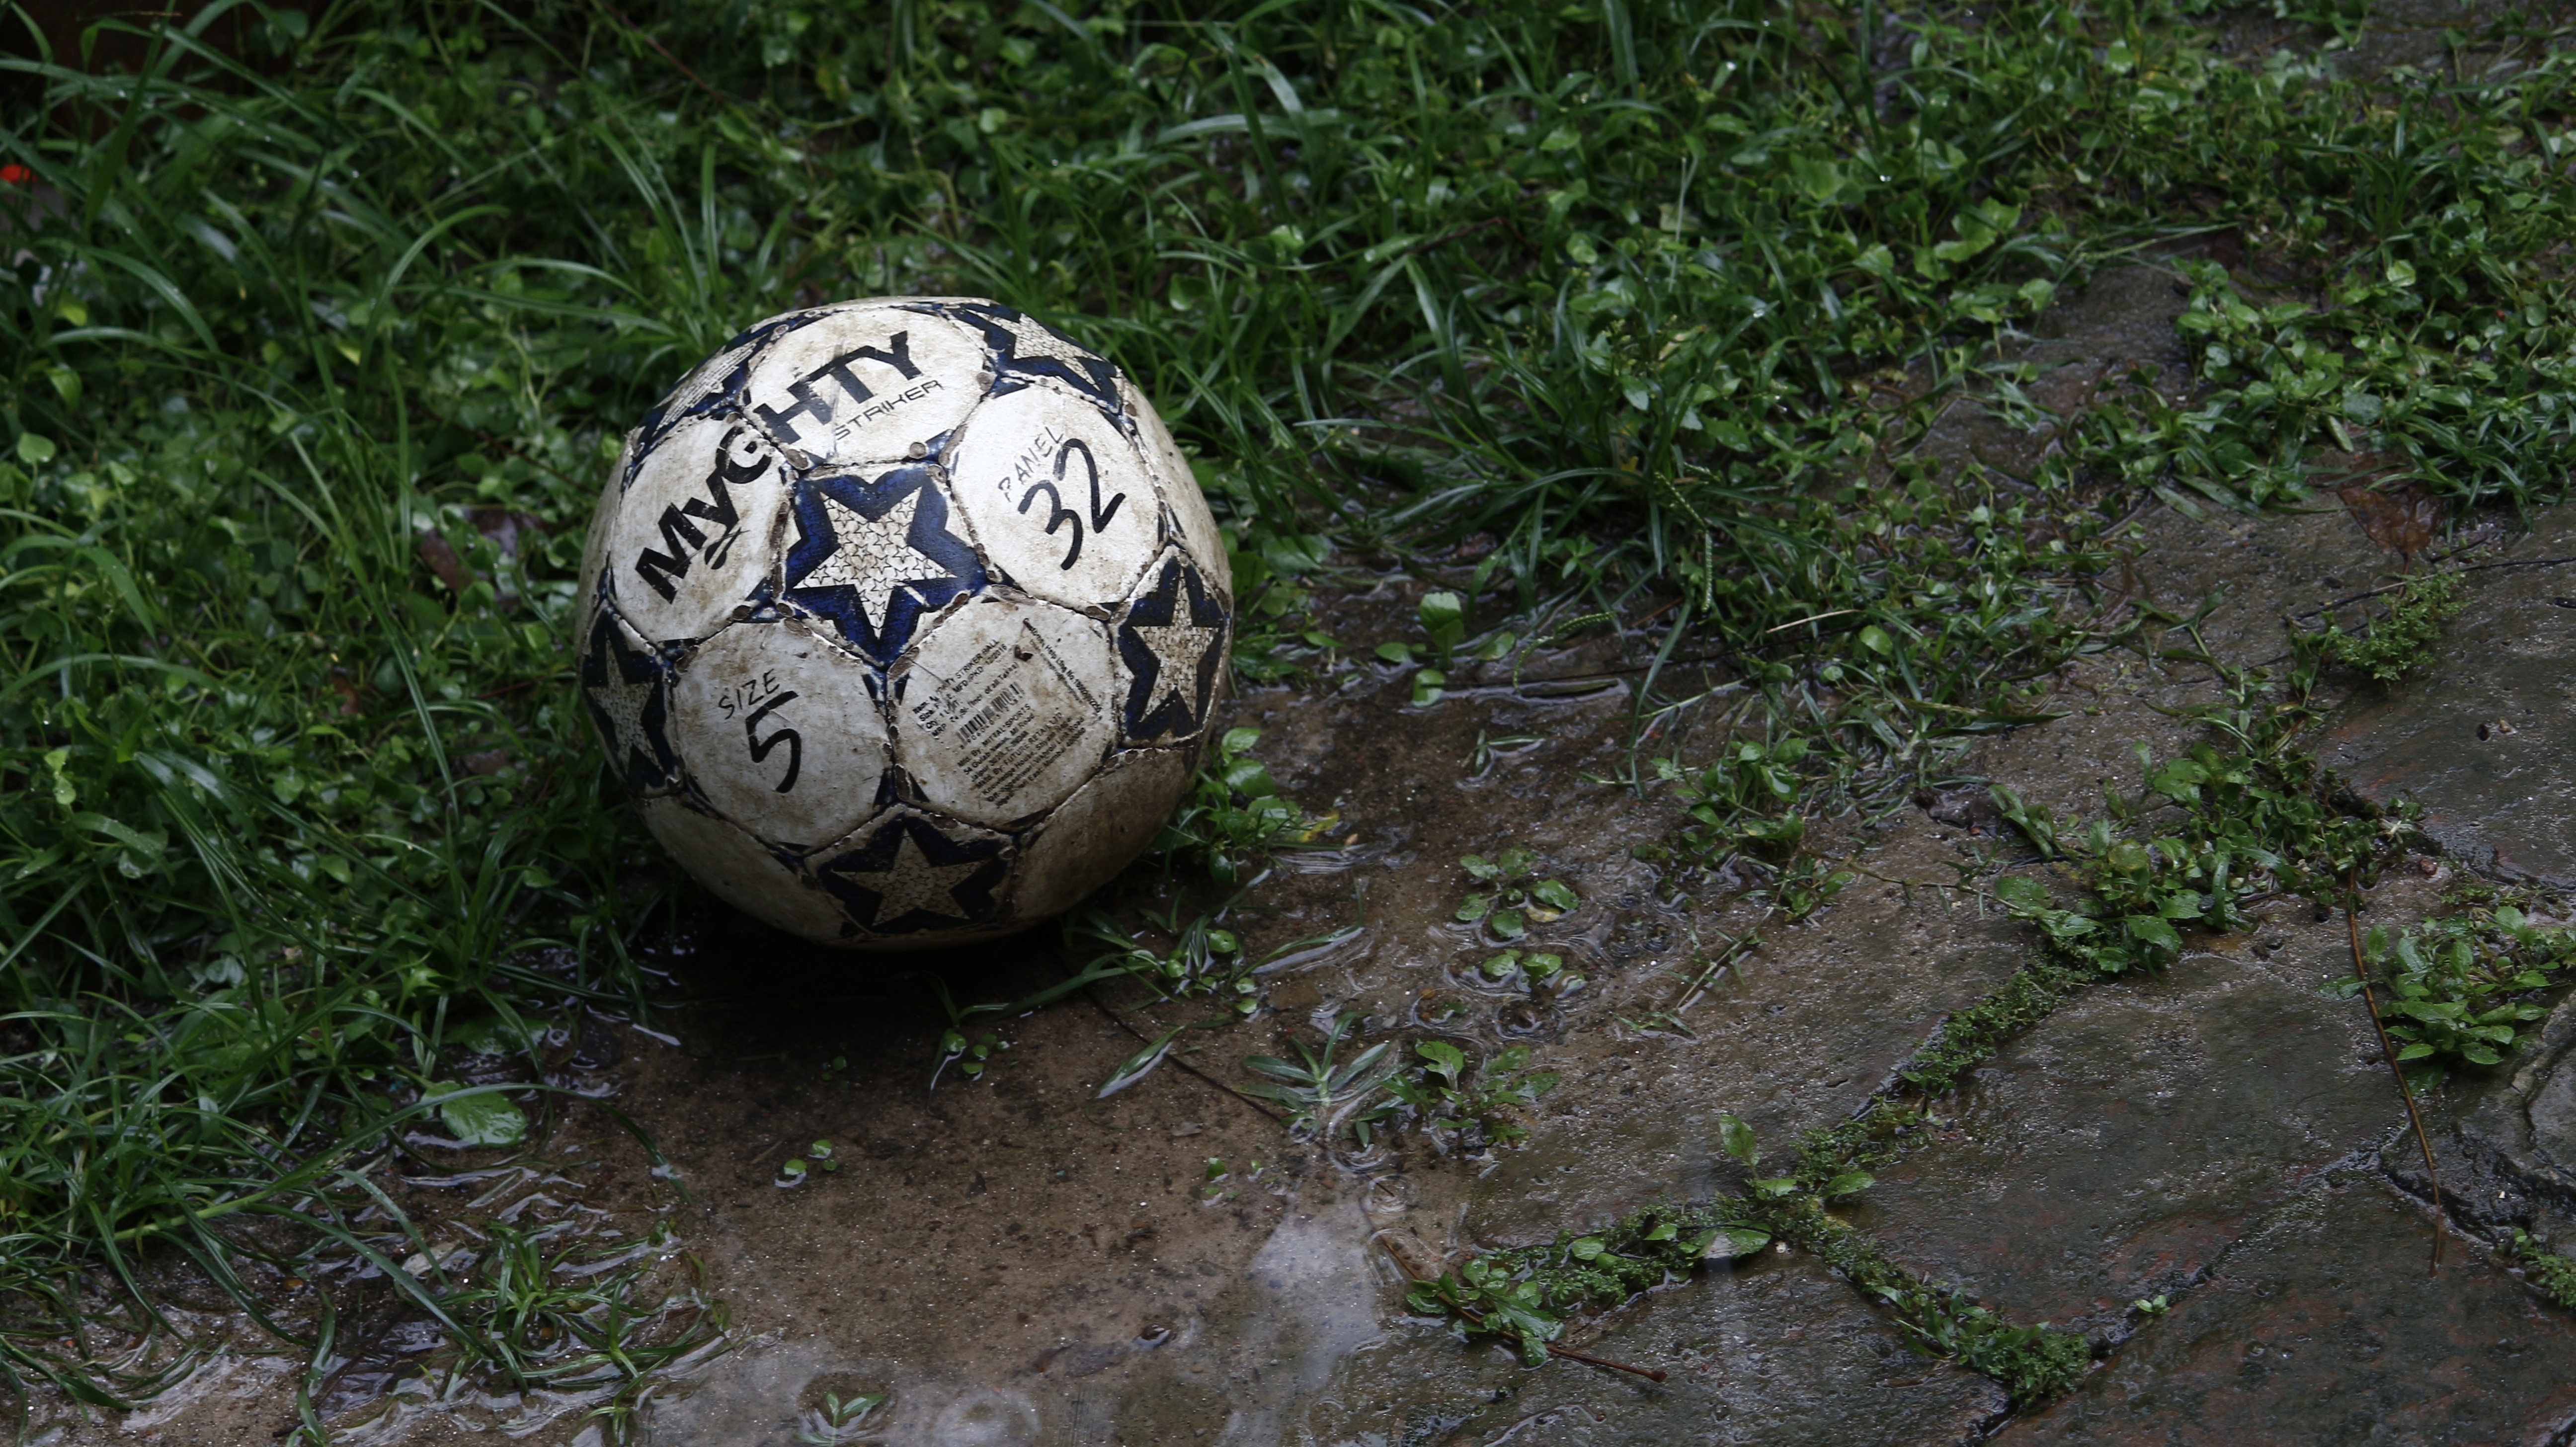 desktop Images football, sports, grass, ball, mud, dirt